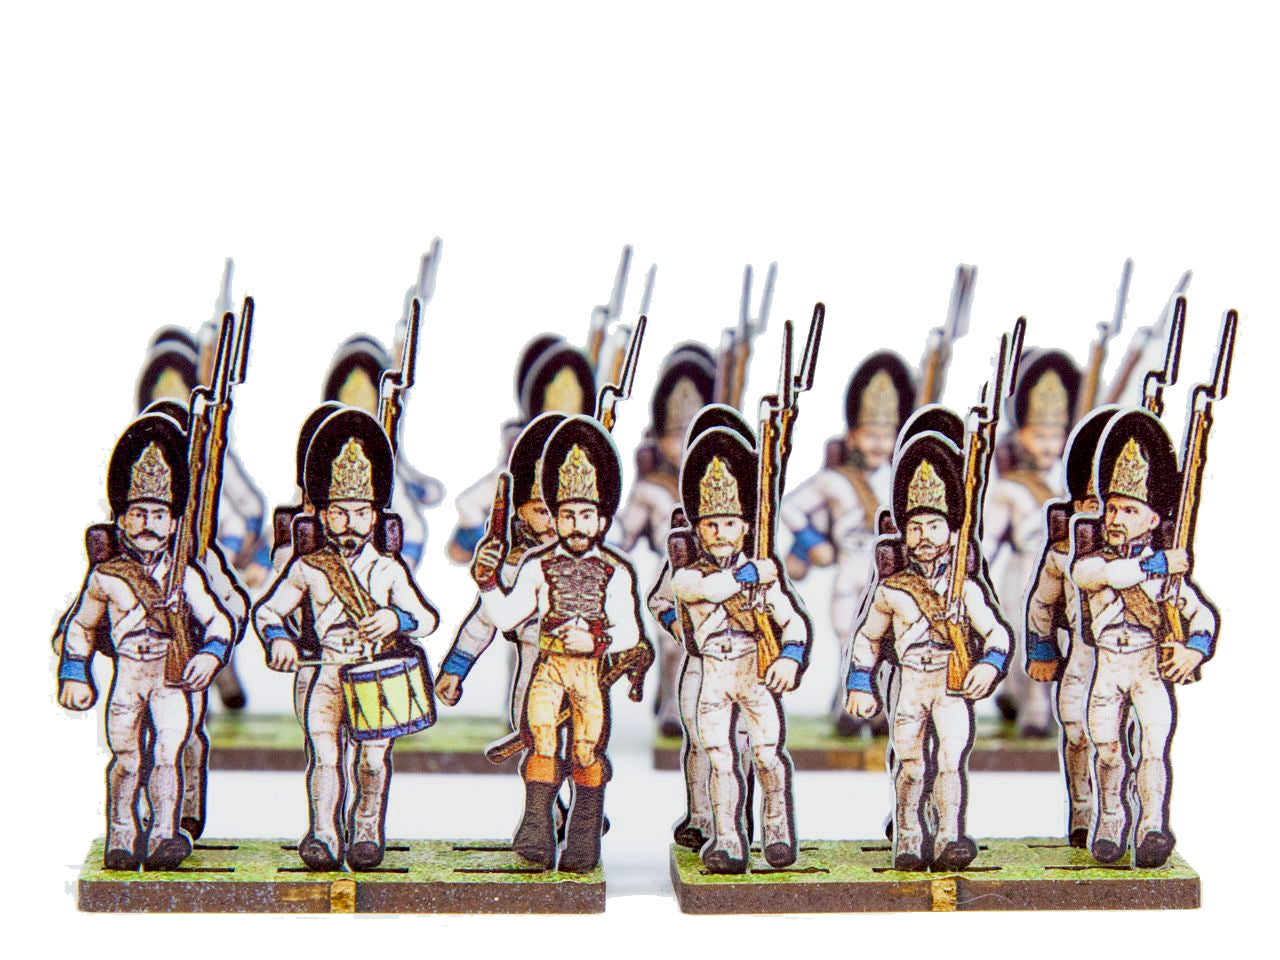 Infanterie-Regiments Erzherzog Karl No.3 Grenadiers